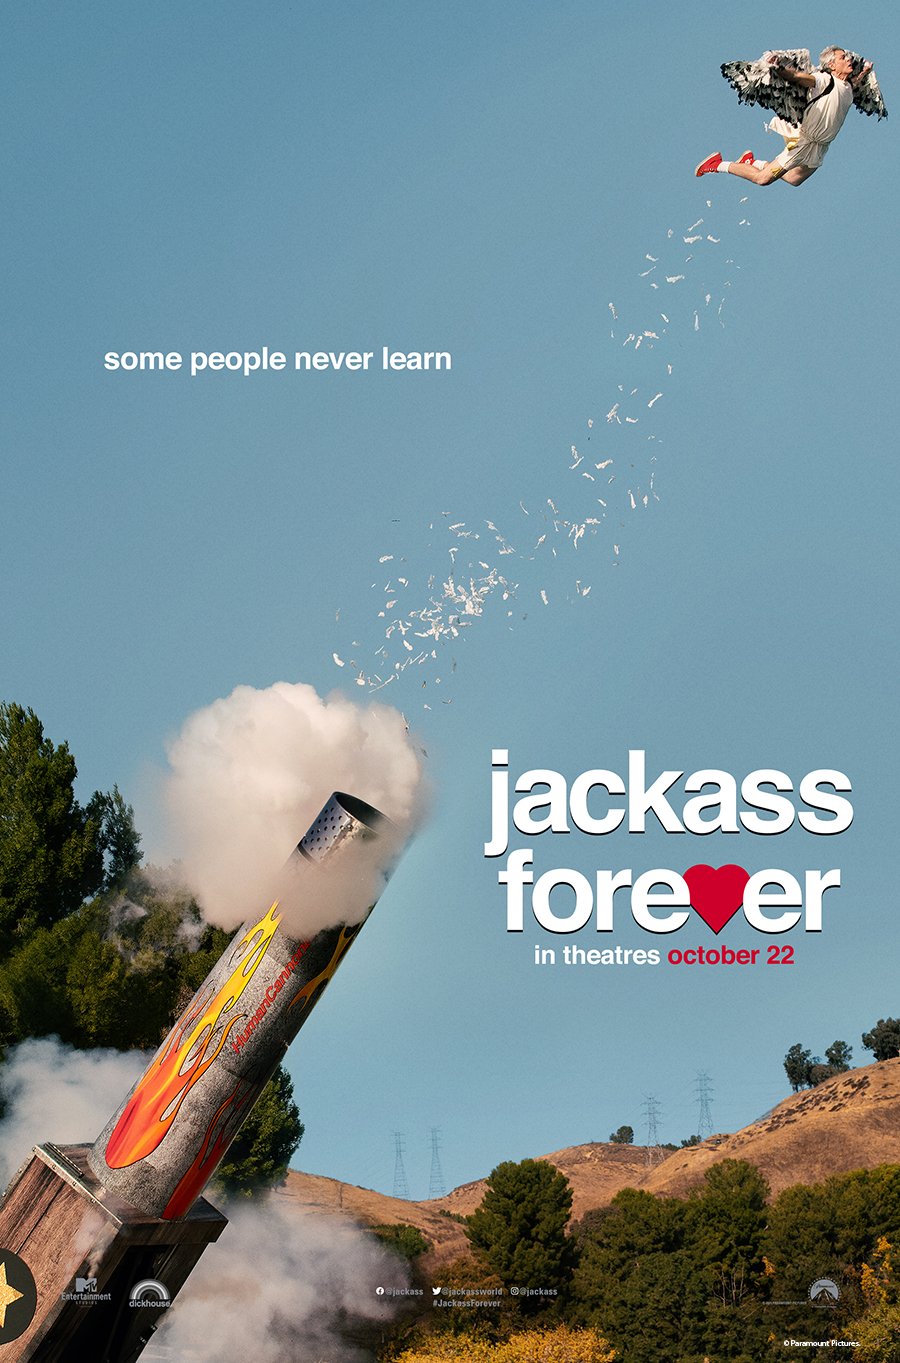 Jackass Forever Poster image.jpg